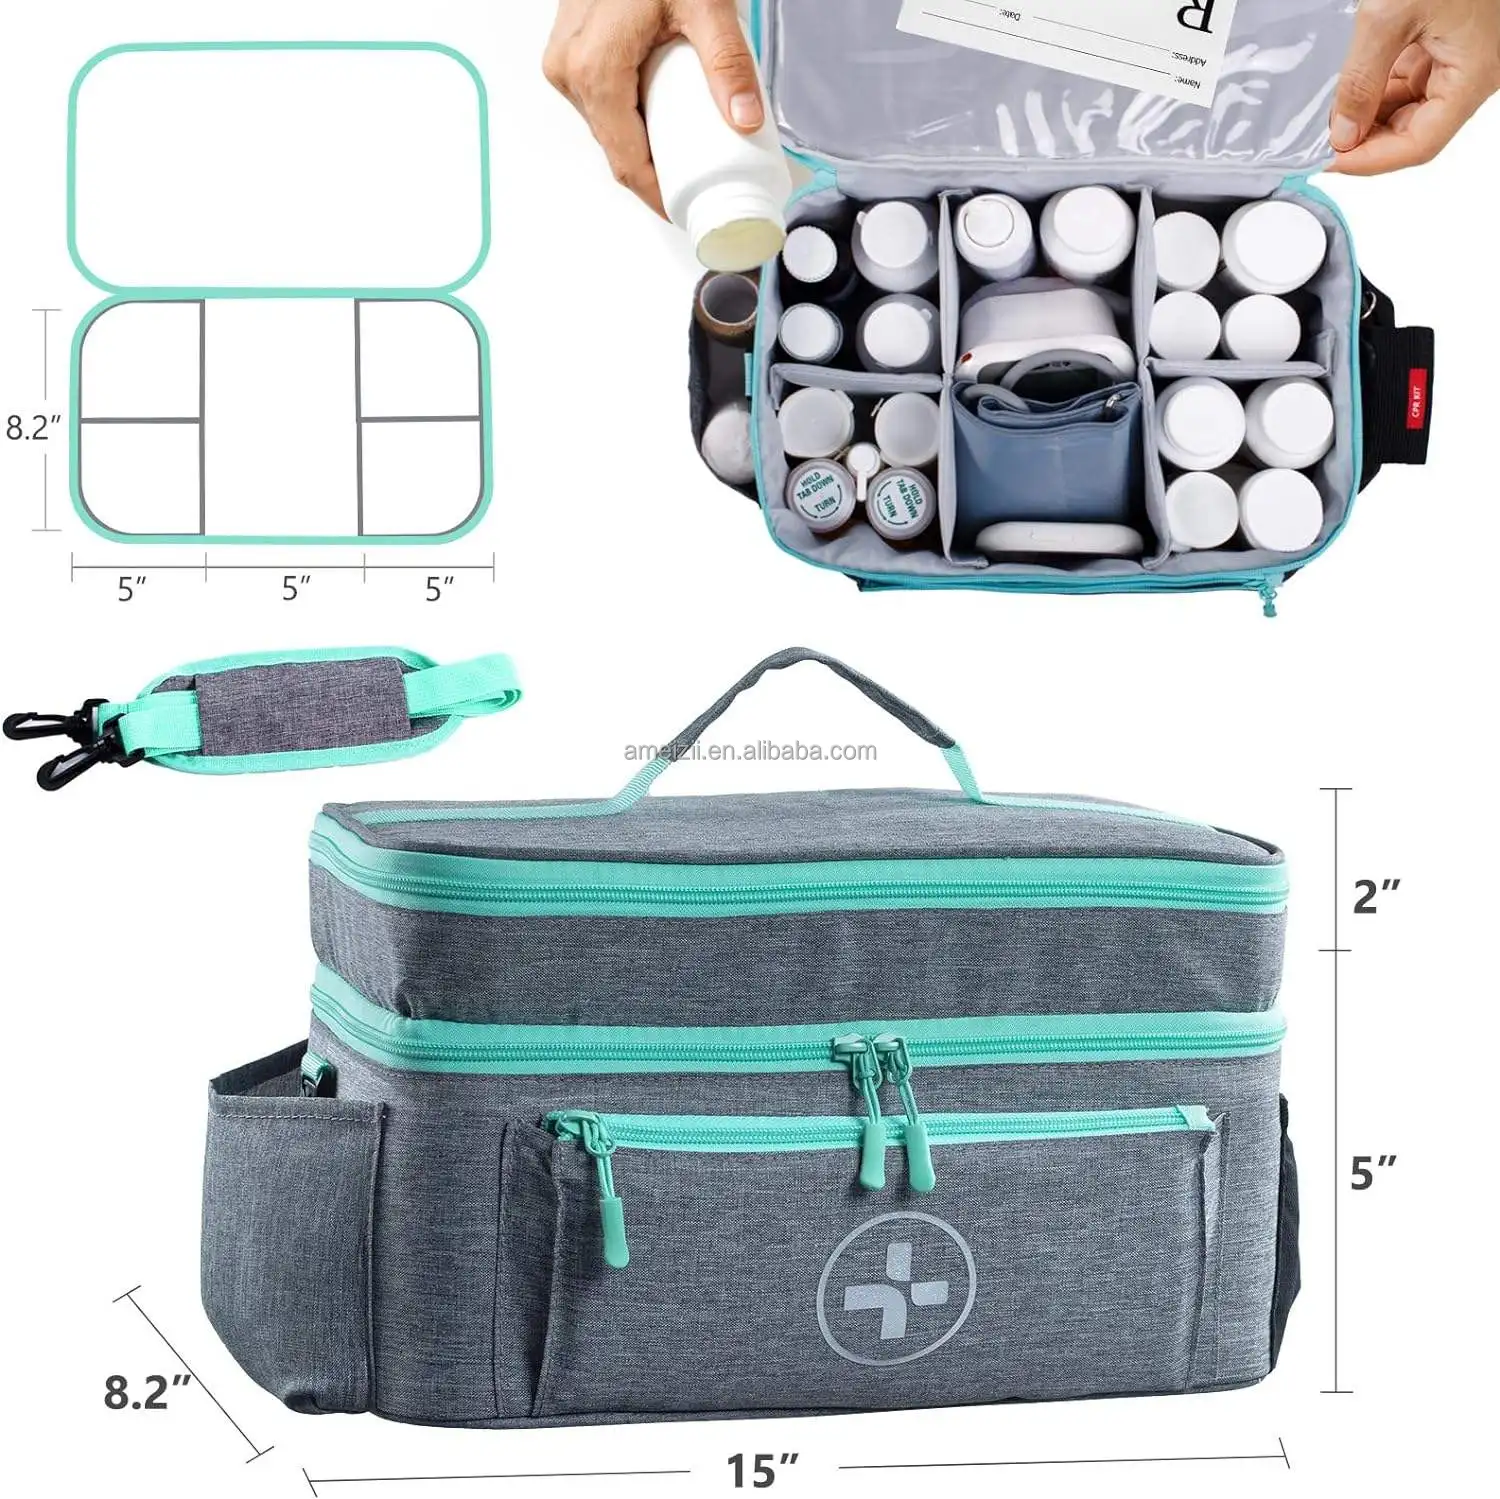 Polyester Medical Bag With Pocket And Medicine Bottle Holder Portable ...